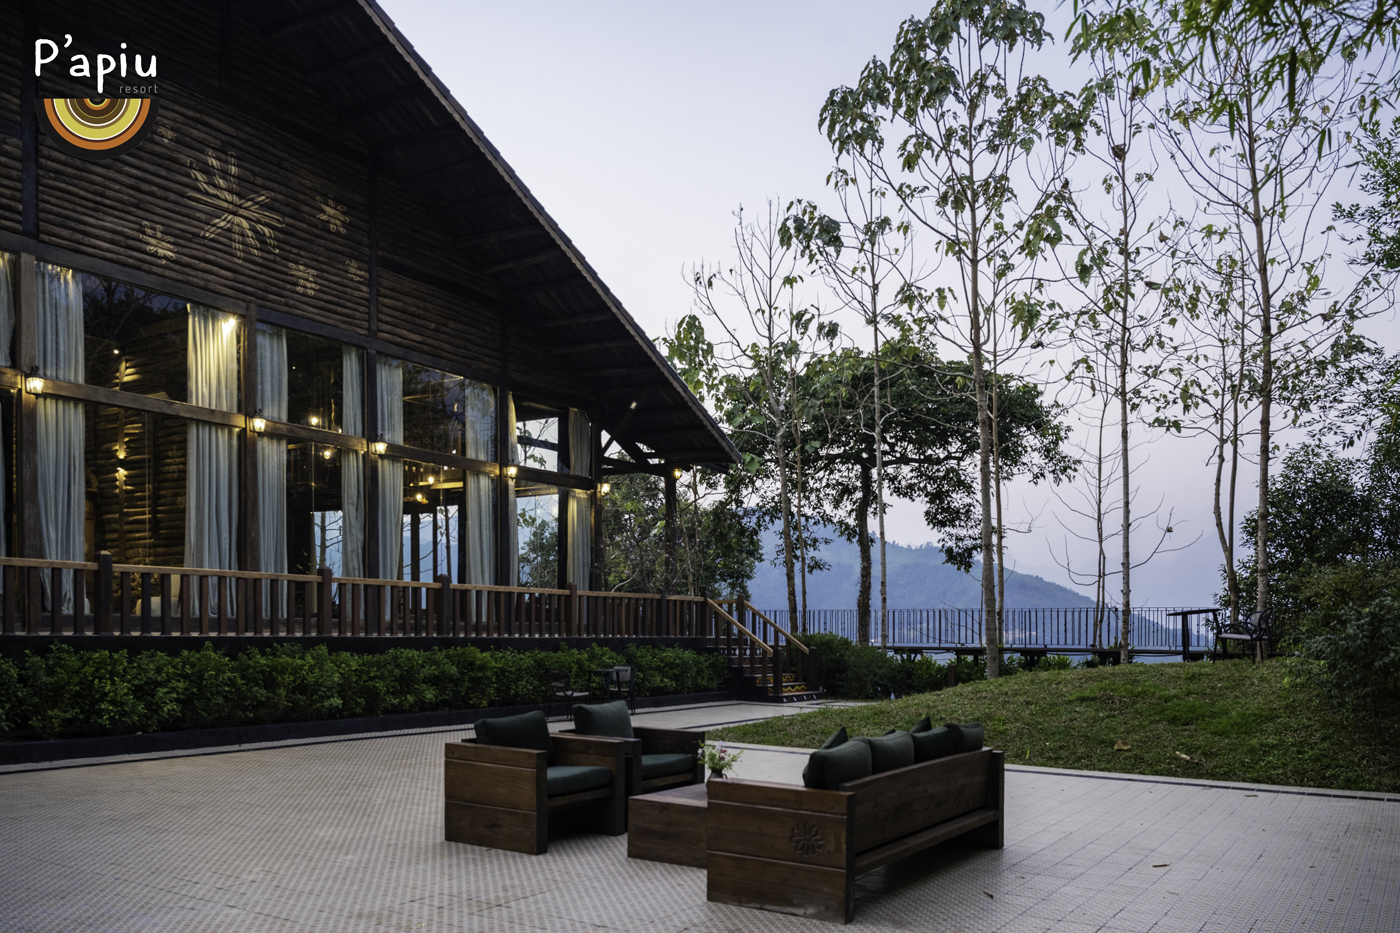 Tại Papiu, mỗi căn Villa cũng  đều được thiết kế độc bản và hoà vào với thiên nhiên để đem đến cho du khách cảm giác thư thái nhất...